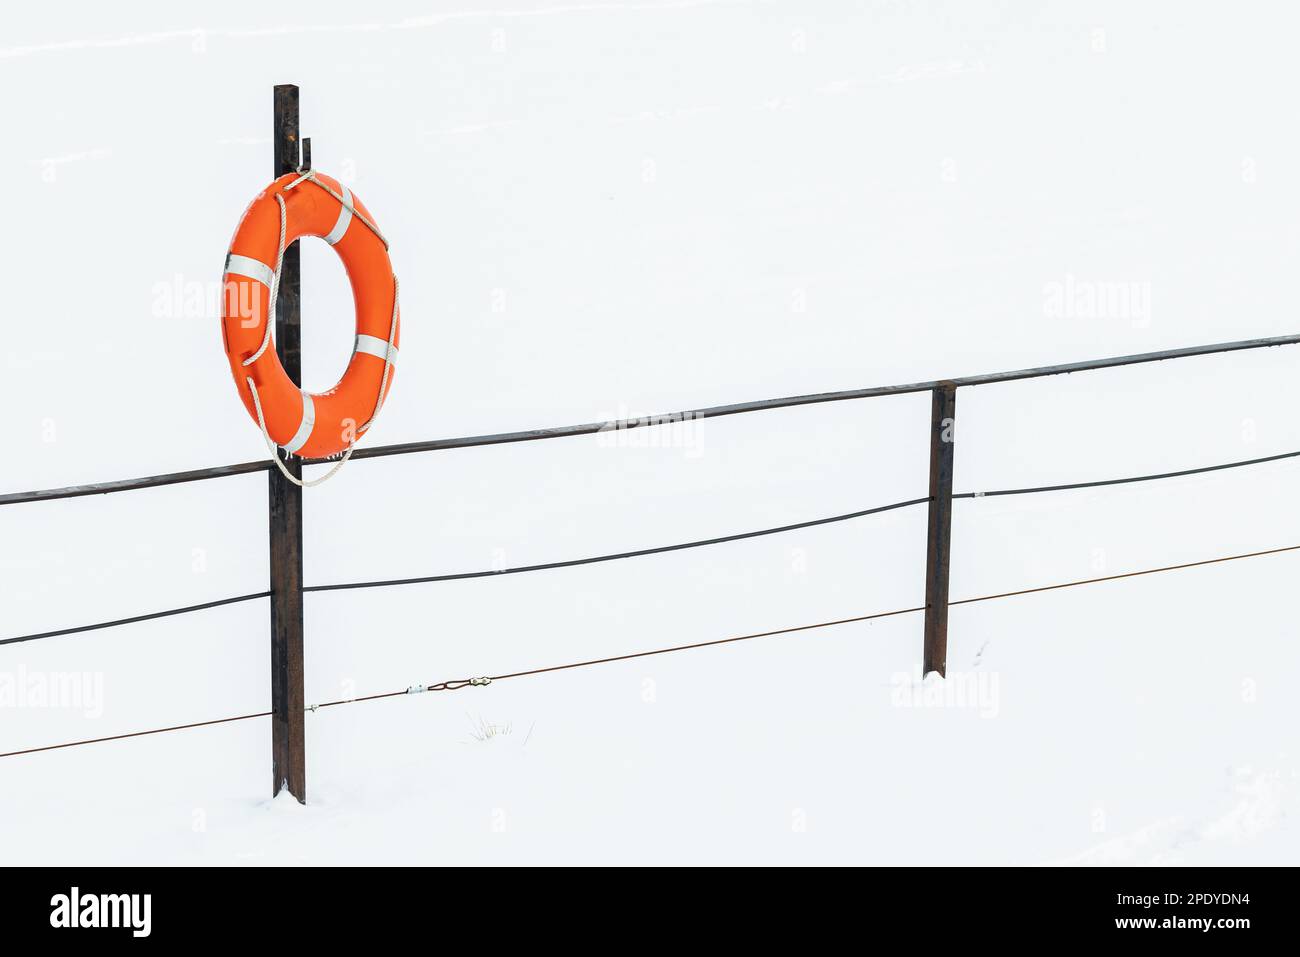 La scialuppa di salvataggio rossa si trova su una ringhiera sulla costa ghiacciata del lago in una giornata invernale Foto Stock